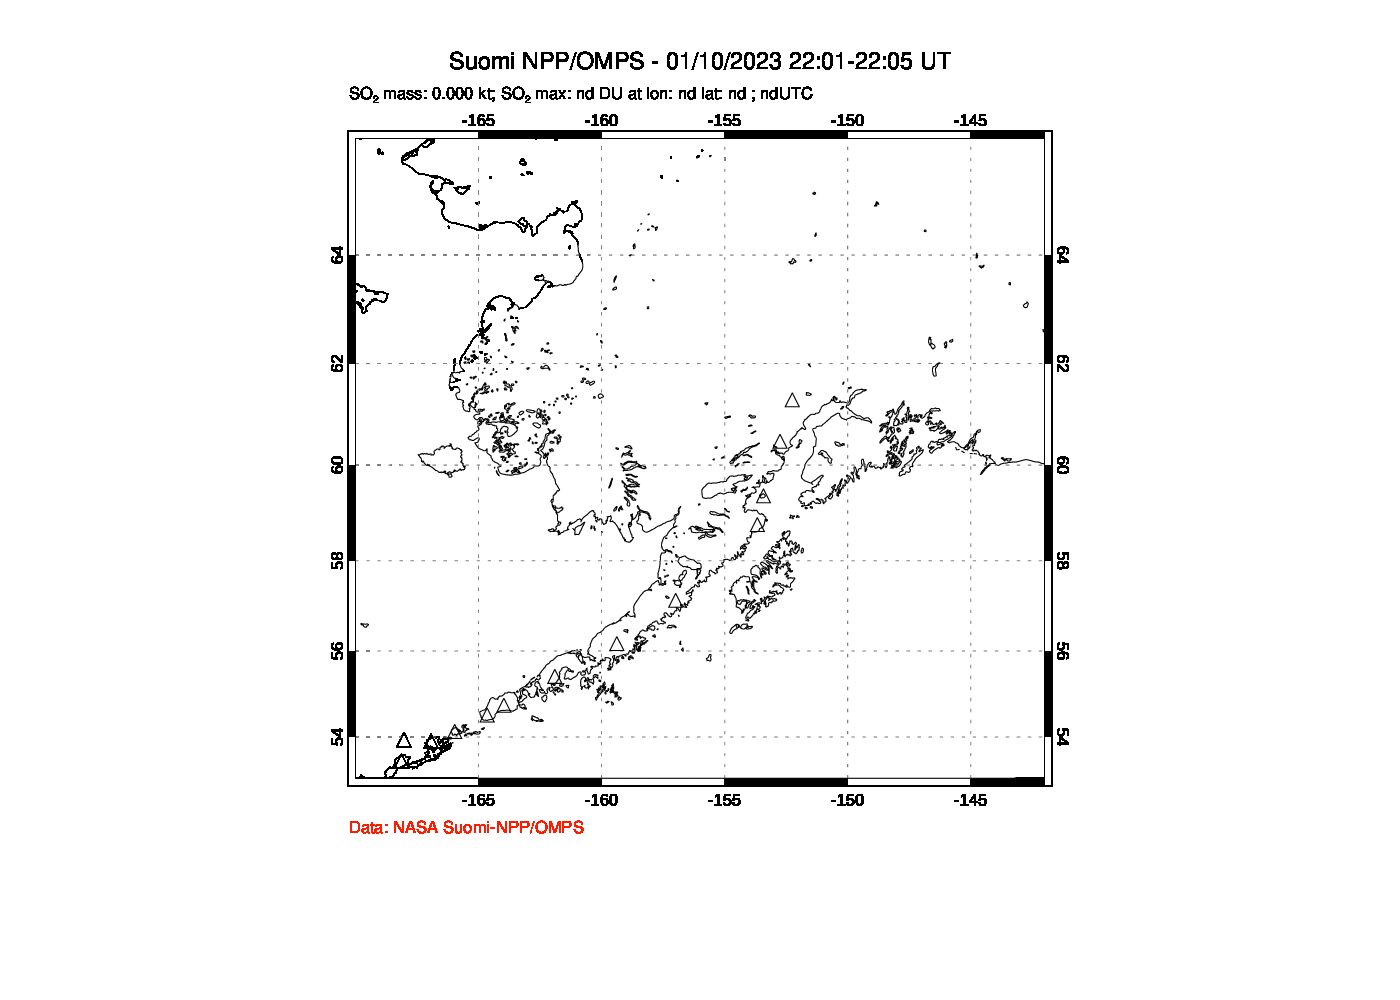 A sulfur dioxide image over Alaska, USA on Jan 10, 2023.